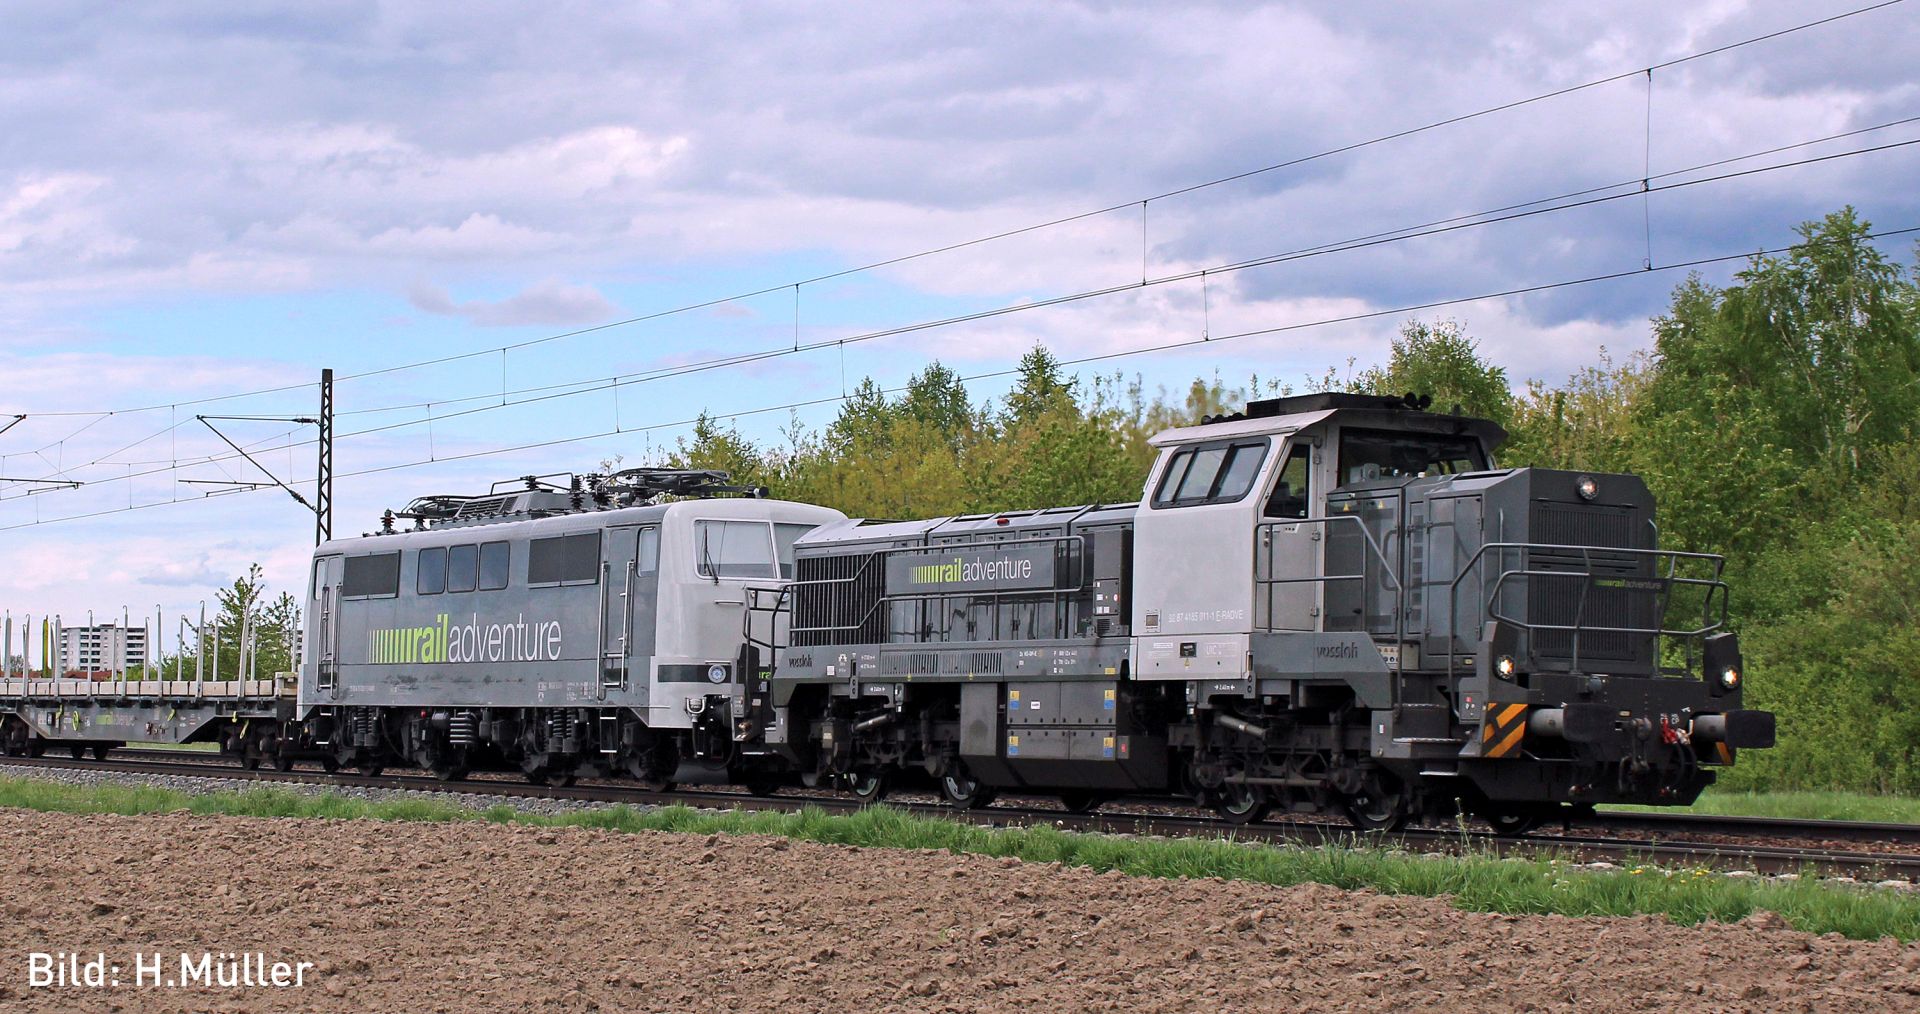 Hobbytrain H32103 - Diesellok Vossloh DE18, Railadventure, Ep.VI